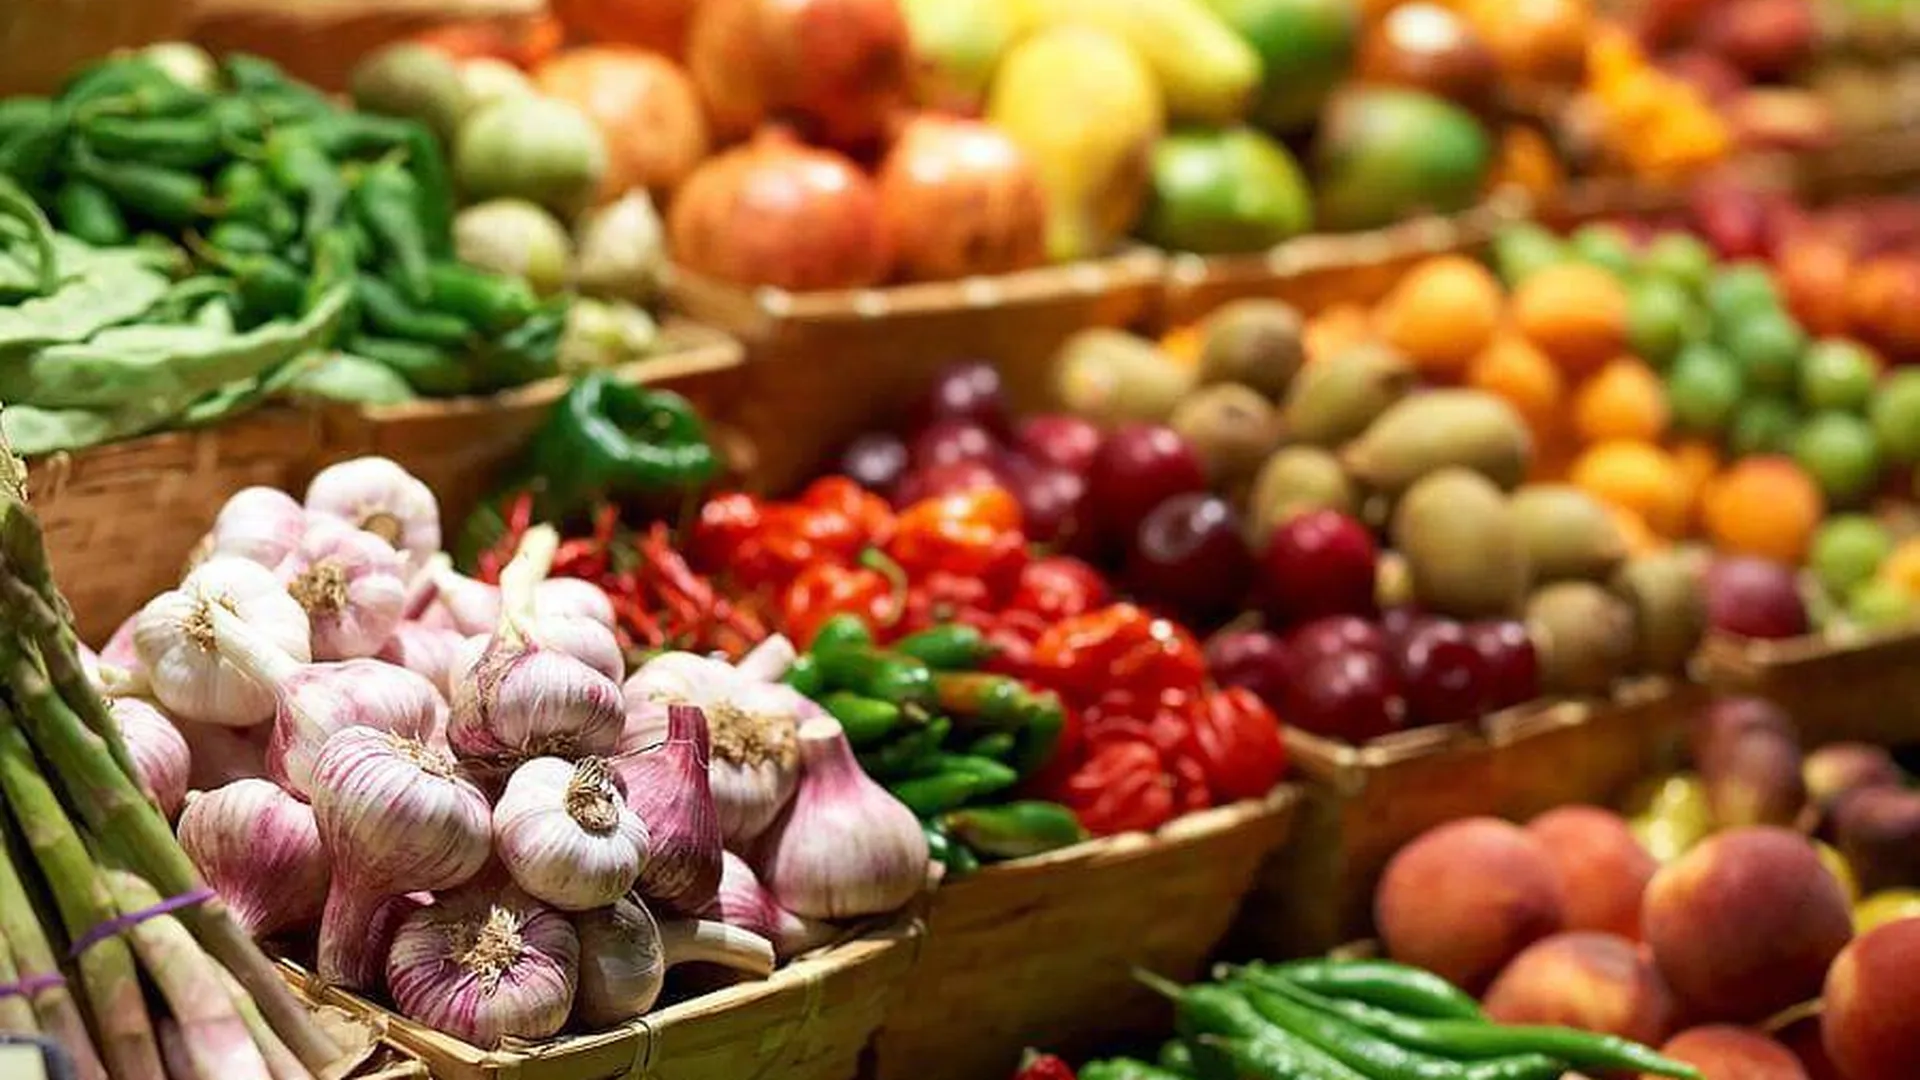 Плодовые товары. Овощи на рынке. Овощи на базаре. Фермерские овощи. Ярмарка сельскохозяйственной продукции.